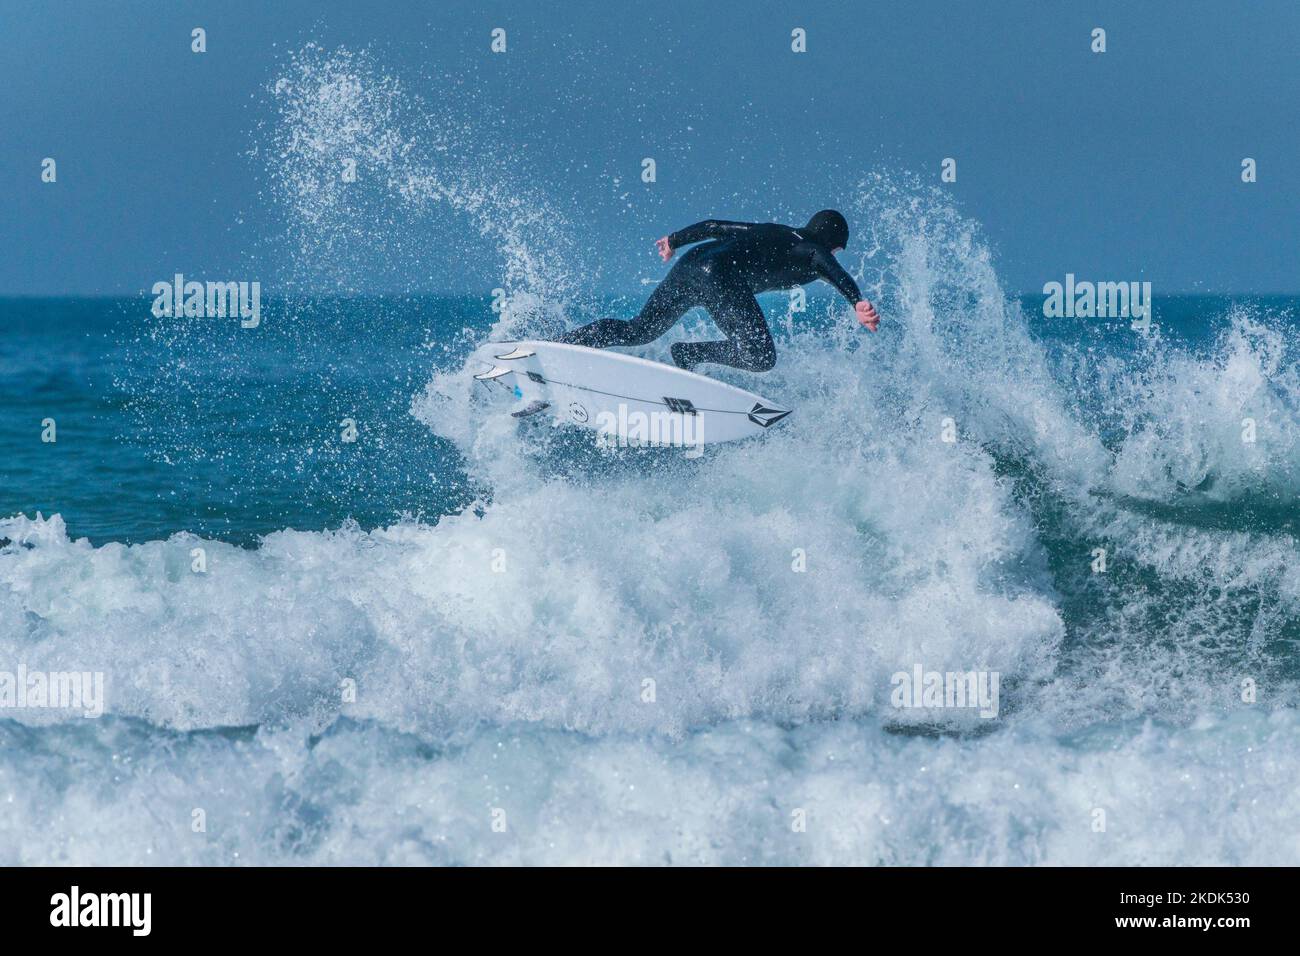 Une action de surf spectaculaire en surfant sur une vague à Fistral à Newquay, en Cornouailles, au Royaume-Uni. Banque D'Images